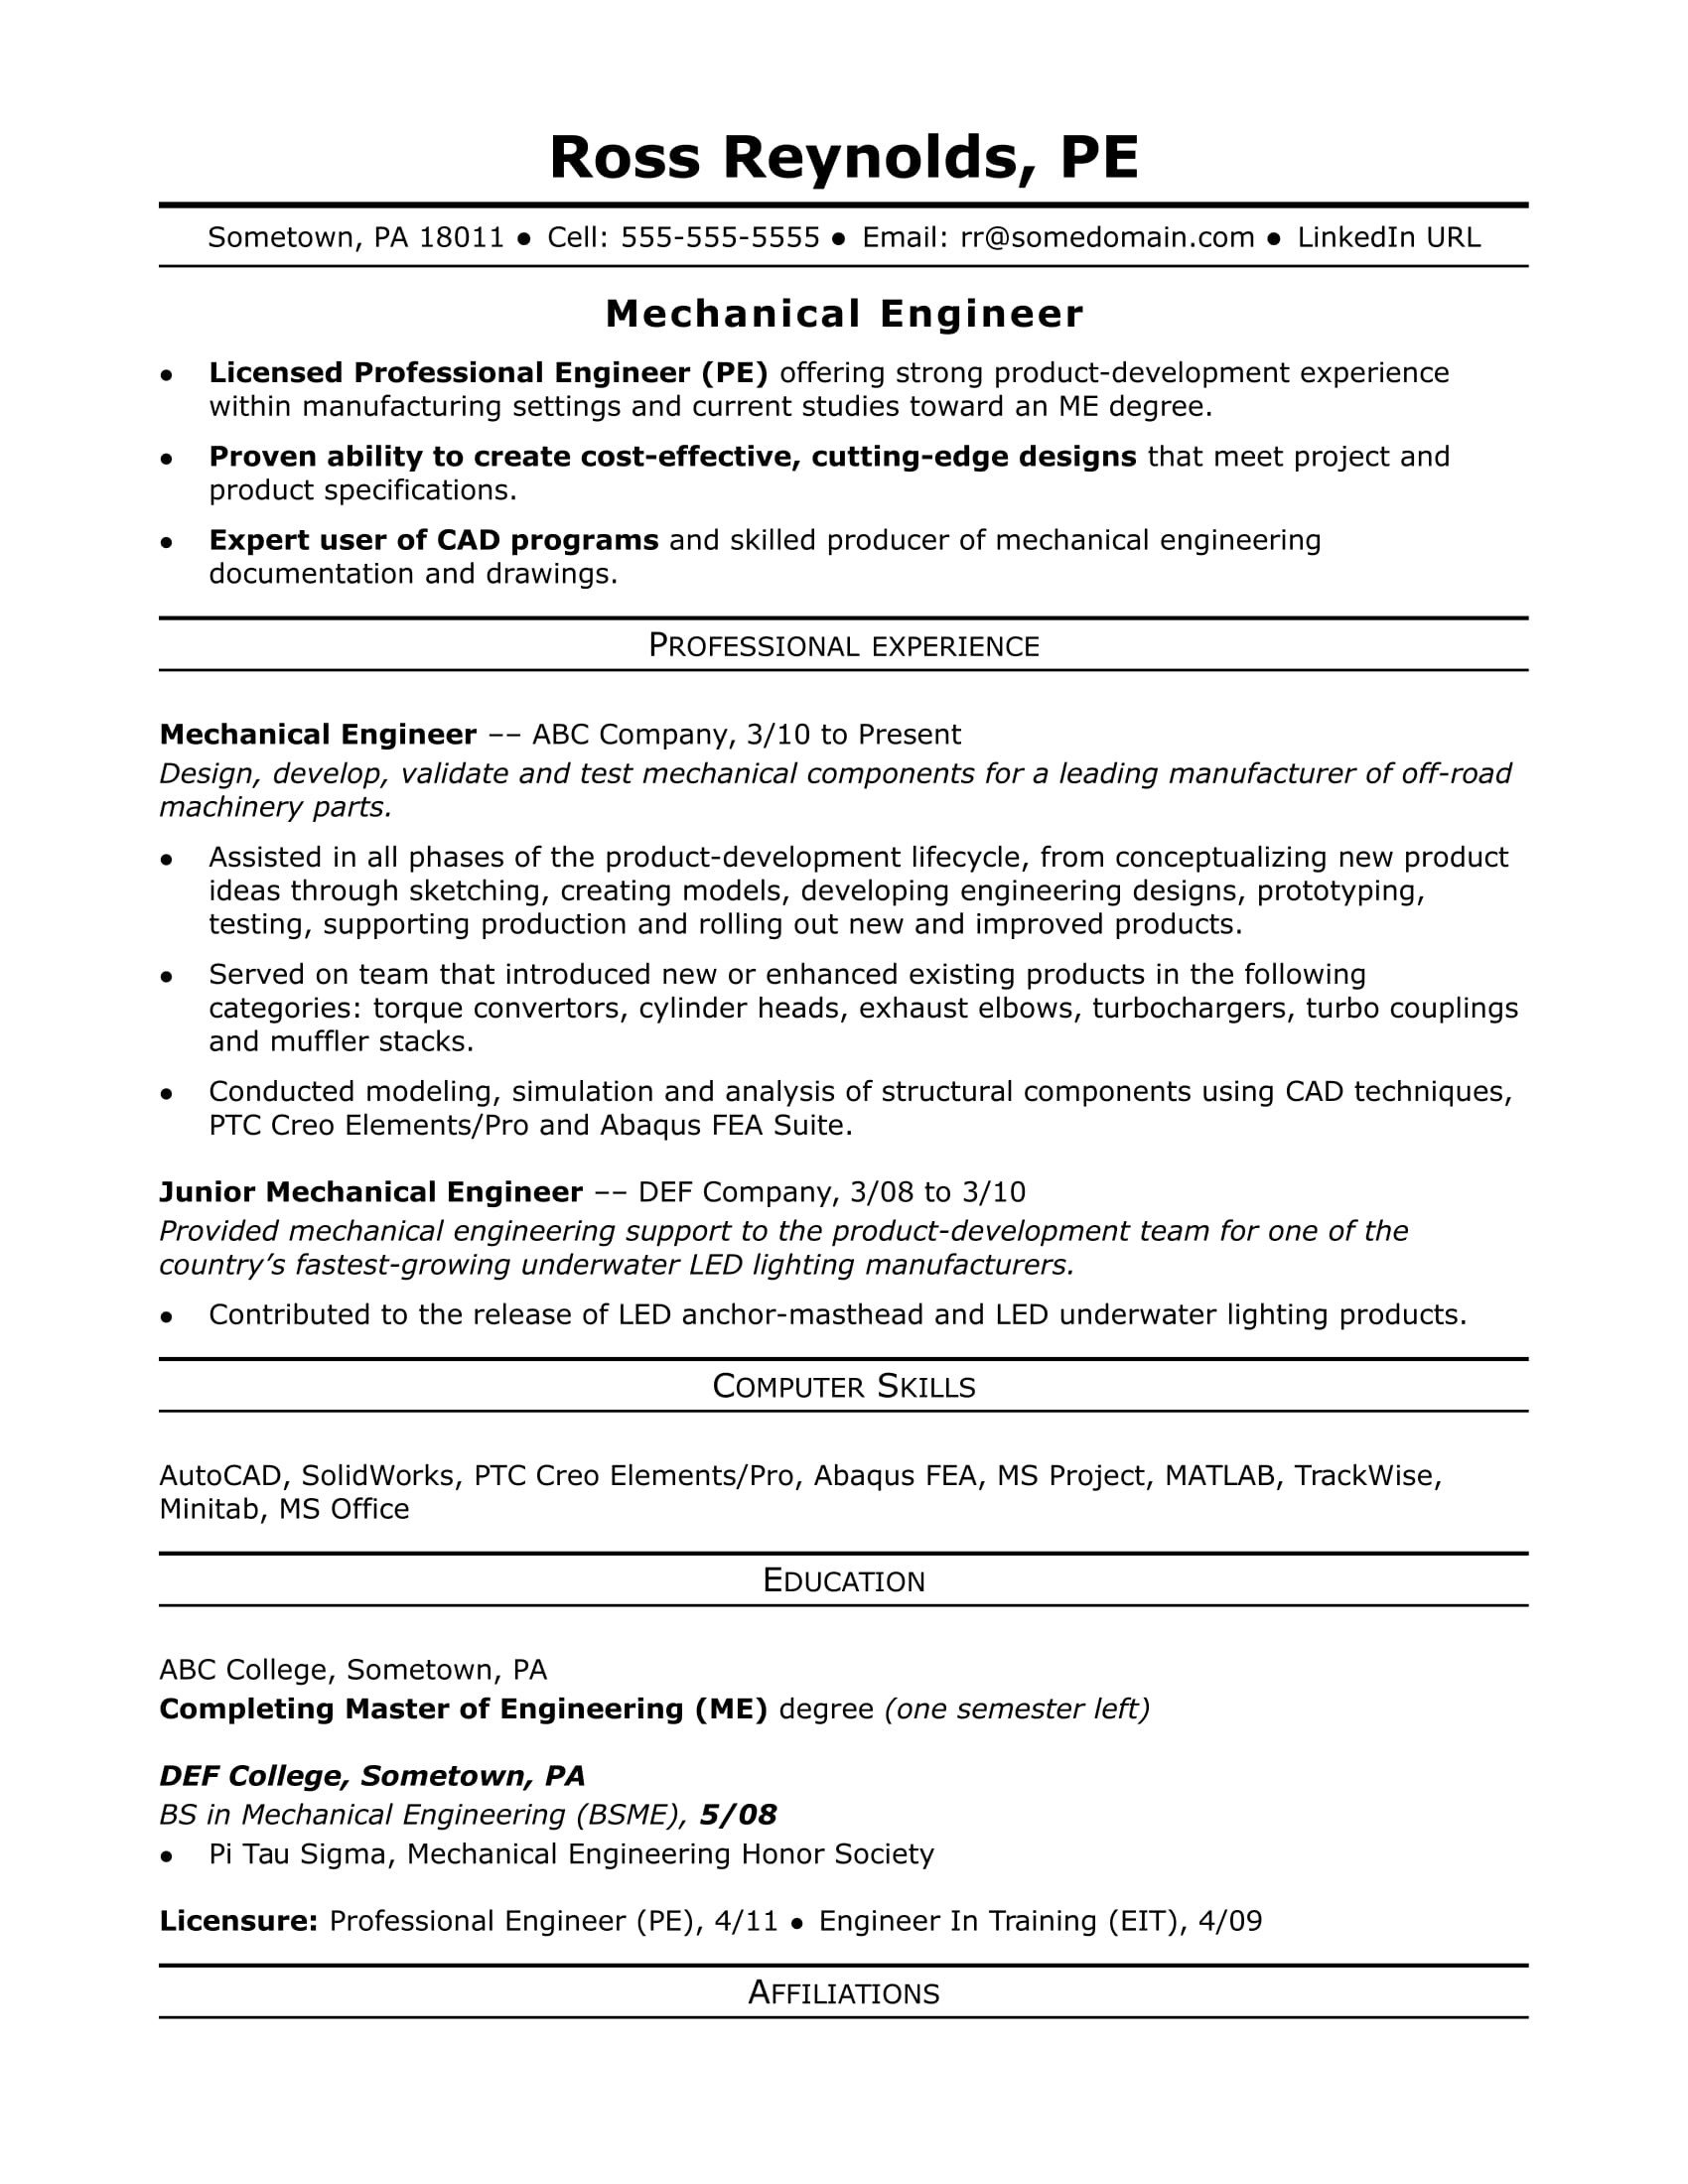 Mechanical Engineering Resume Template Sample Resume for A Midlevel Mechanical Engineer